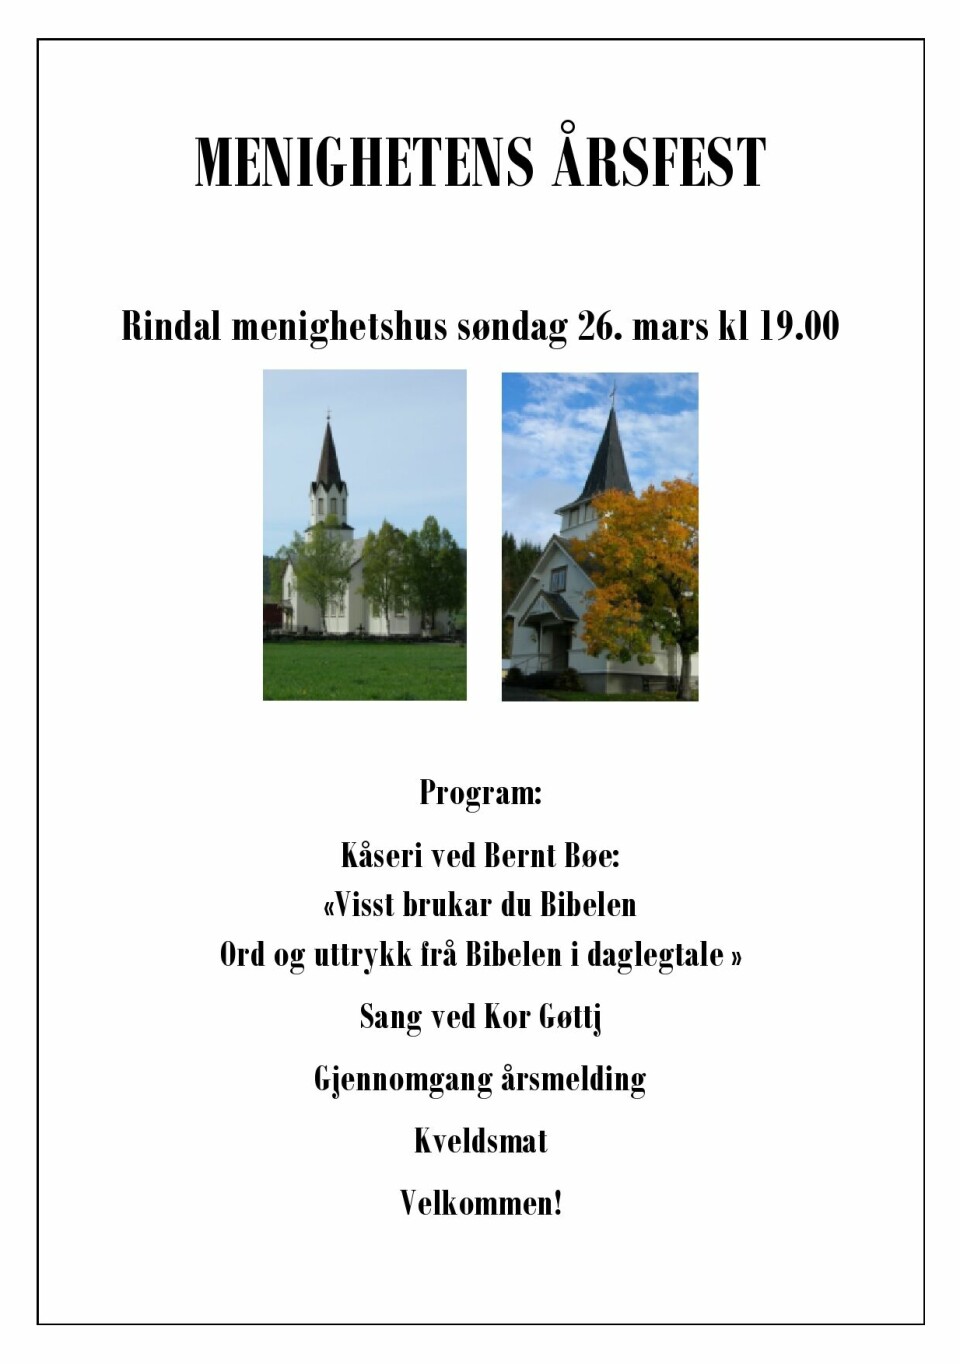 Plakat for menighetens årsfest i Rindal Menighetshus søndag 26. mars klokken 19.00.
Under er det et bilde av menighetshuset